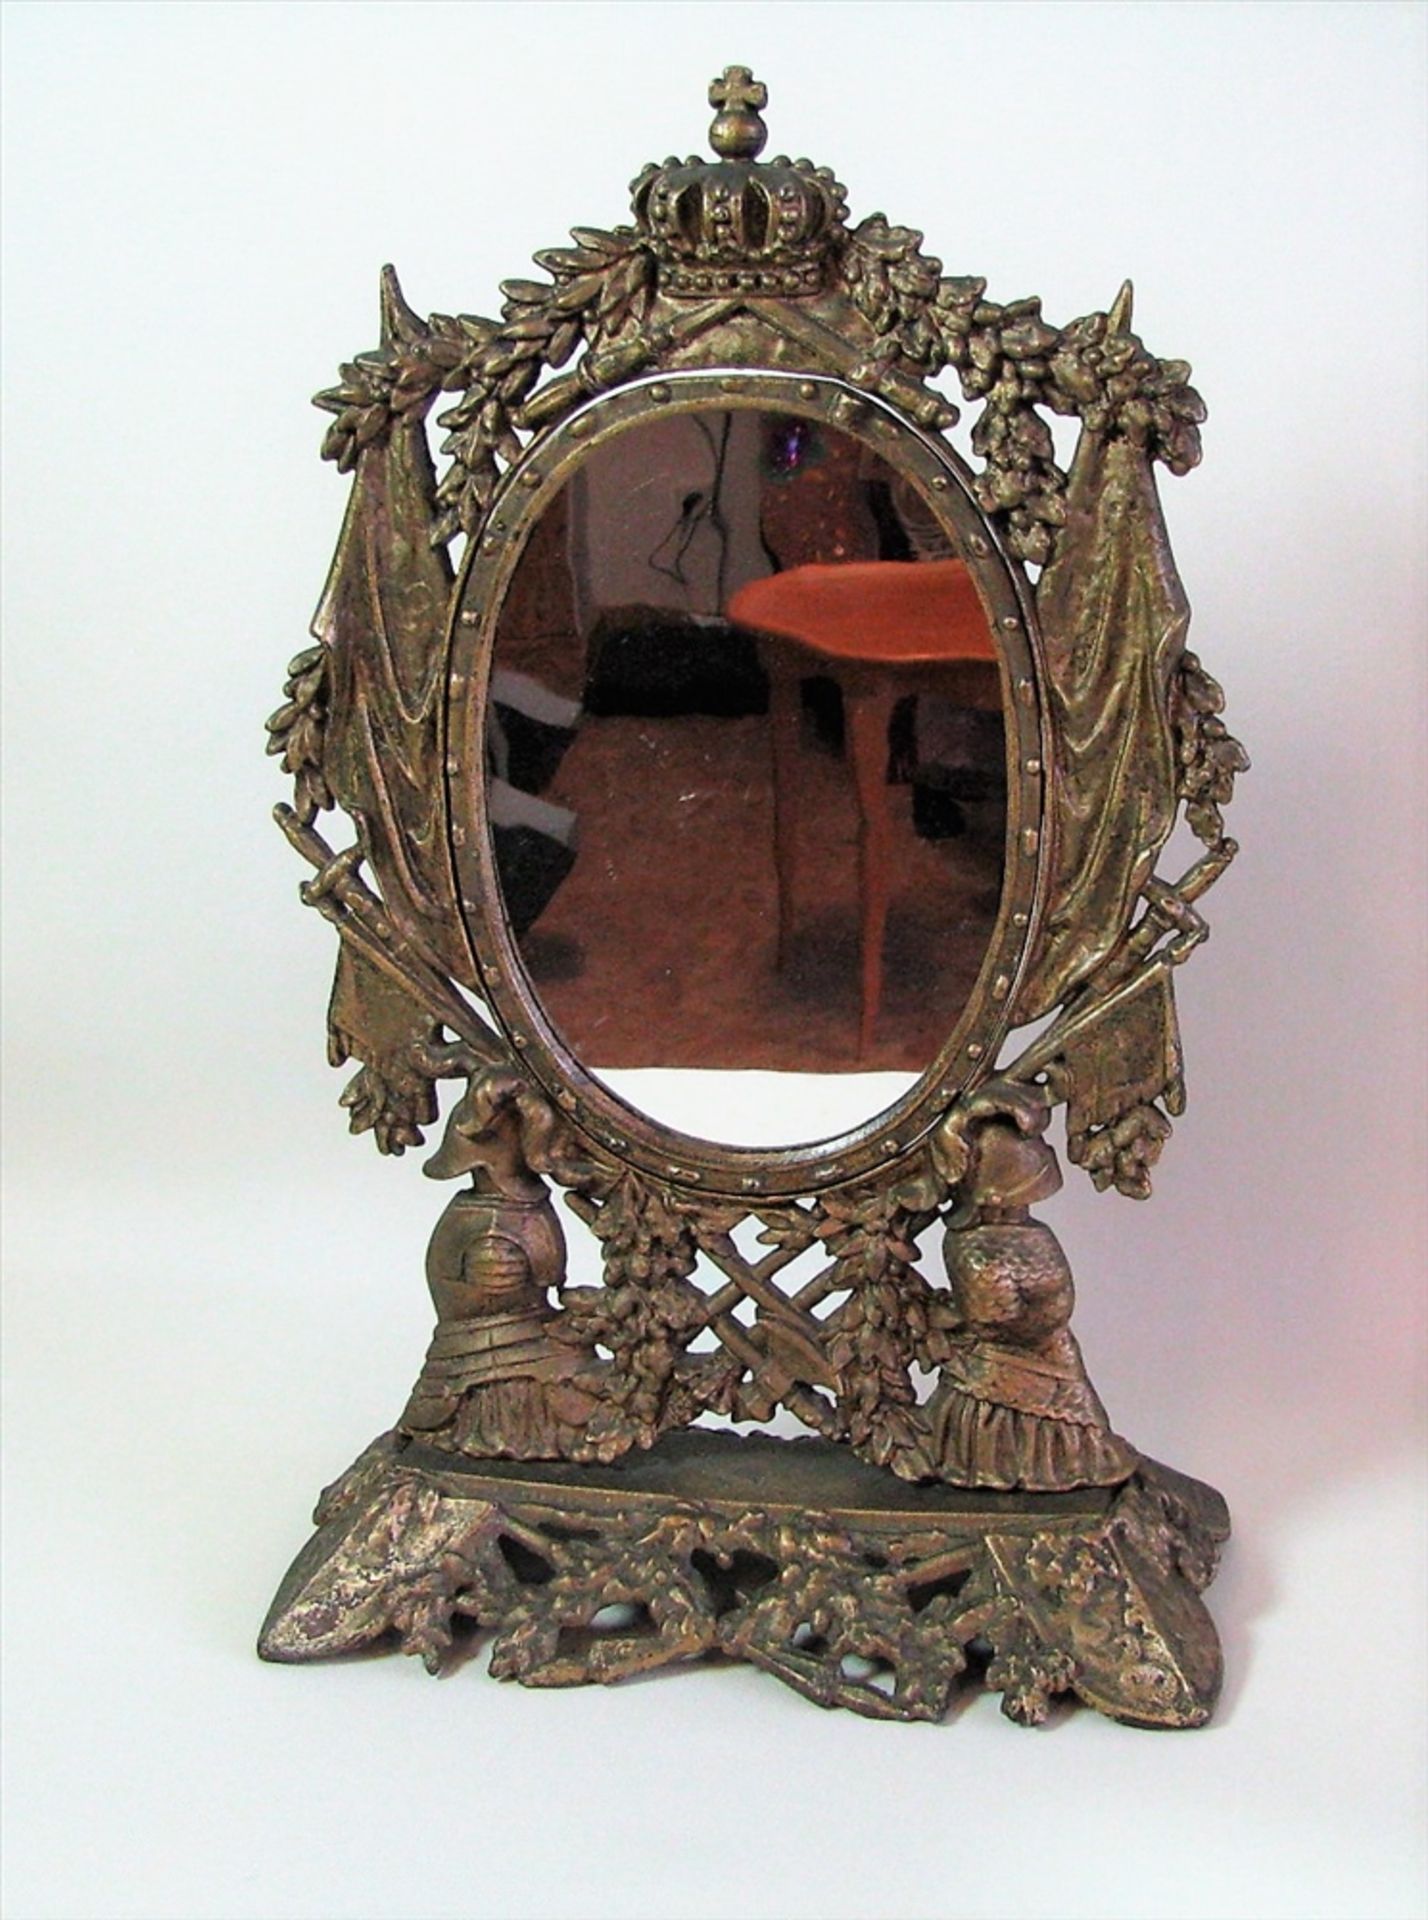 Tischspiegel mit kaiserlichen Attributen, um 1900, Gusseisen vergoldet, 52 x 33 x 16 cm.- - -19.00 %